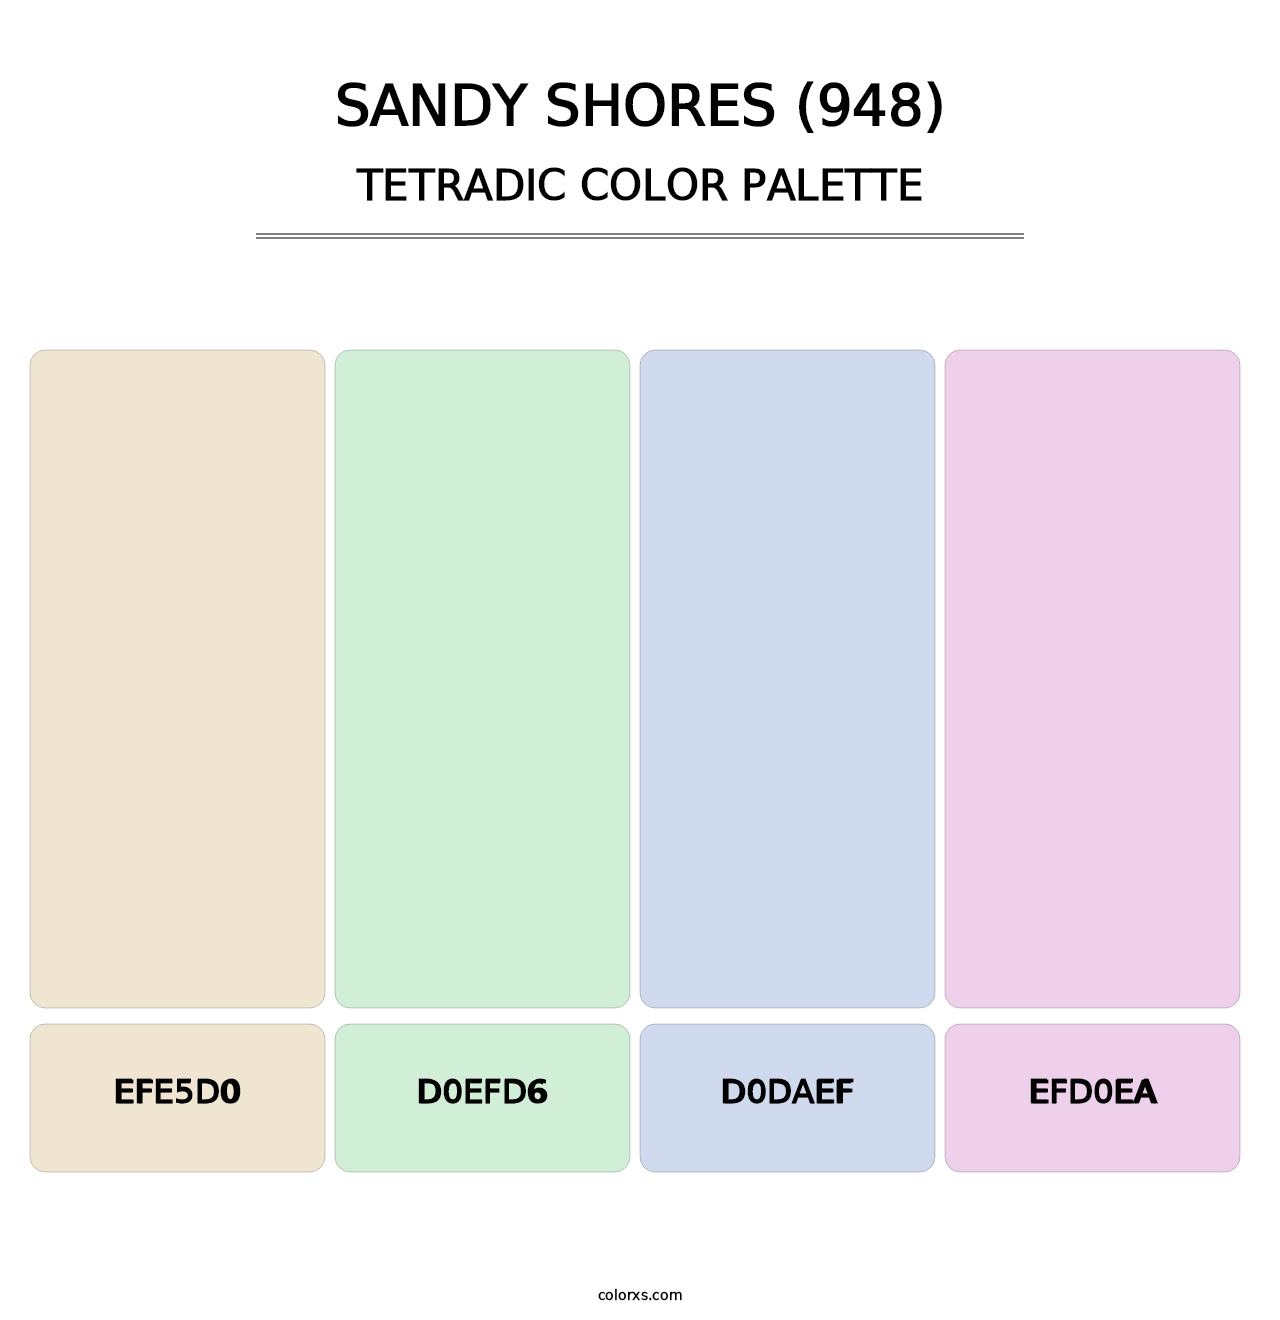 Sandy Shores (948) - Tetradic Color Palette